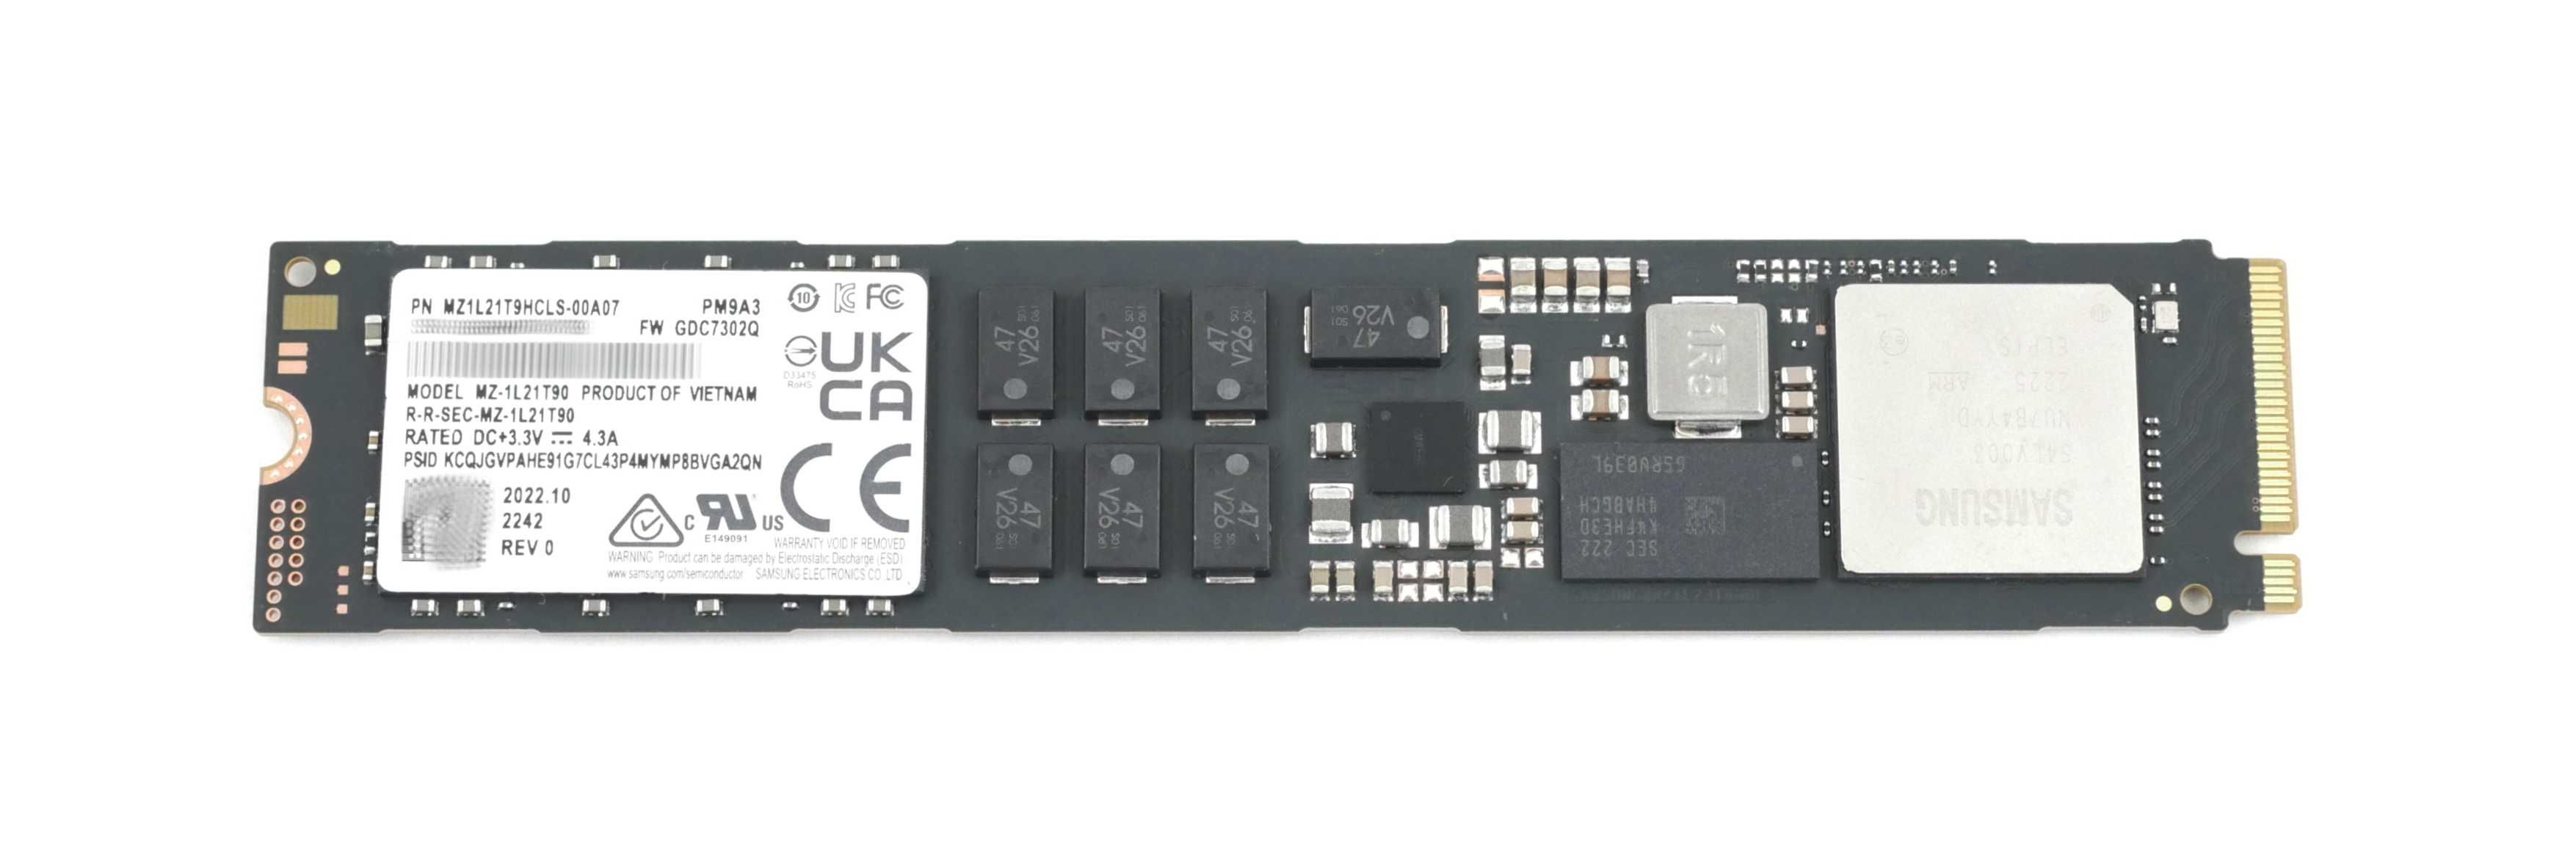 Samsung 1.92TB MZ1L21T9HCLS SSD M.2 22110 PCIe 4.0 x4 NVMe PM9A3